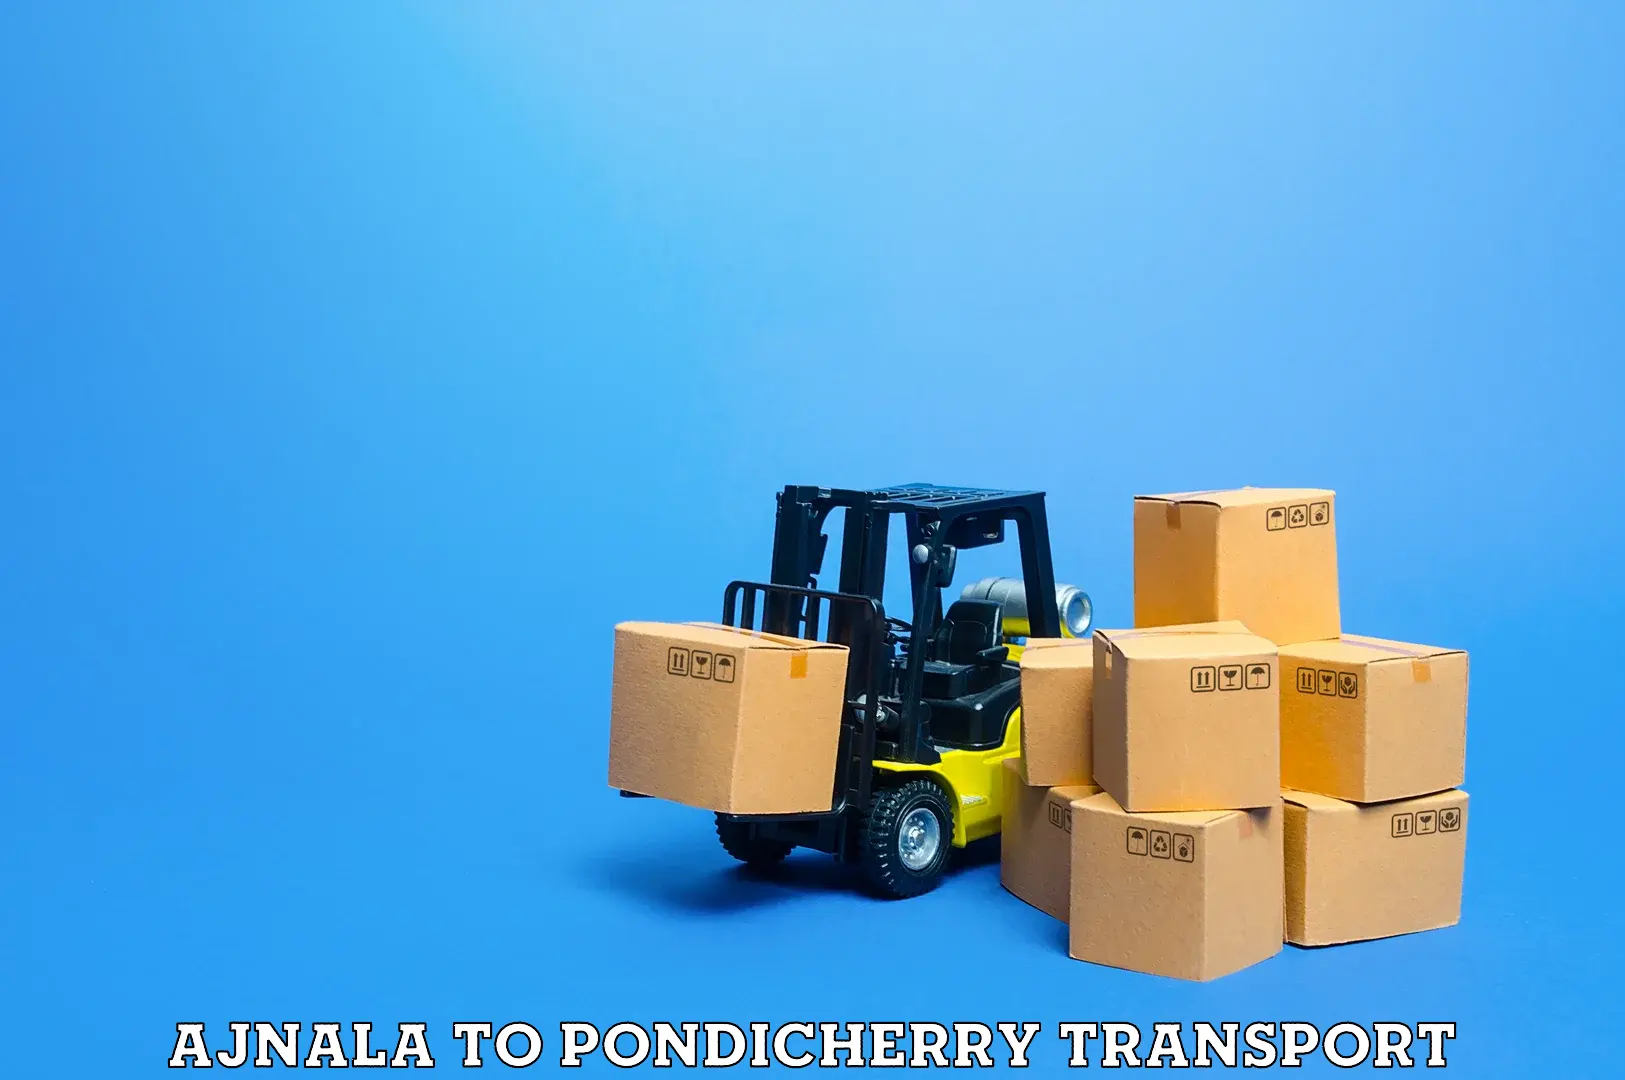 Daily transport service Ajnala to Pondicherry University